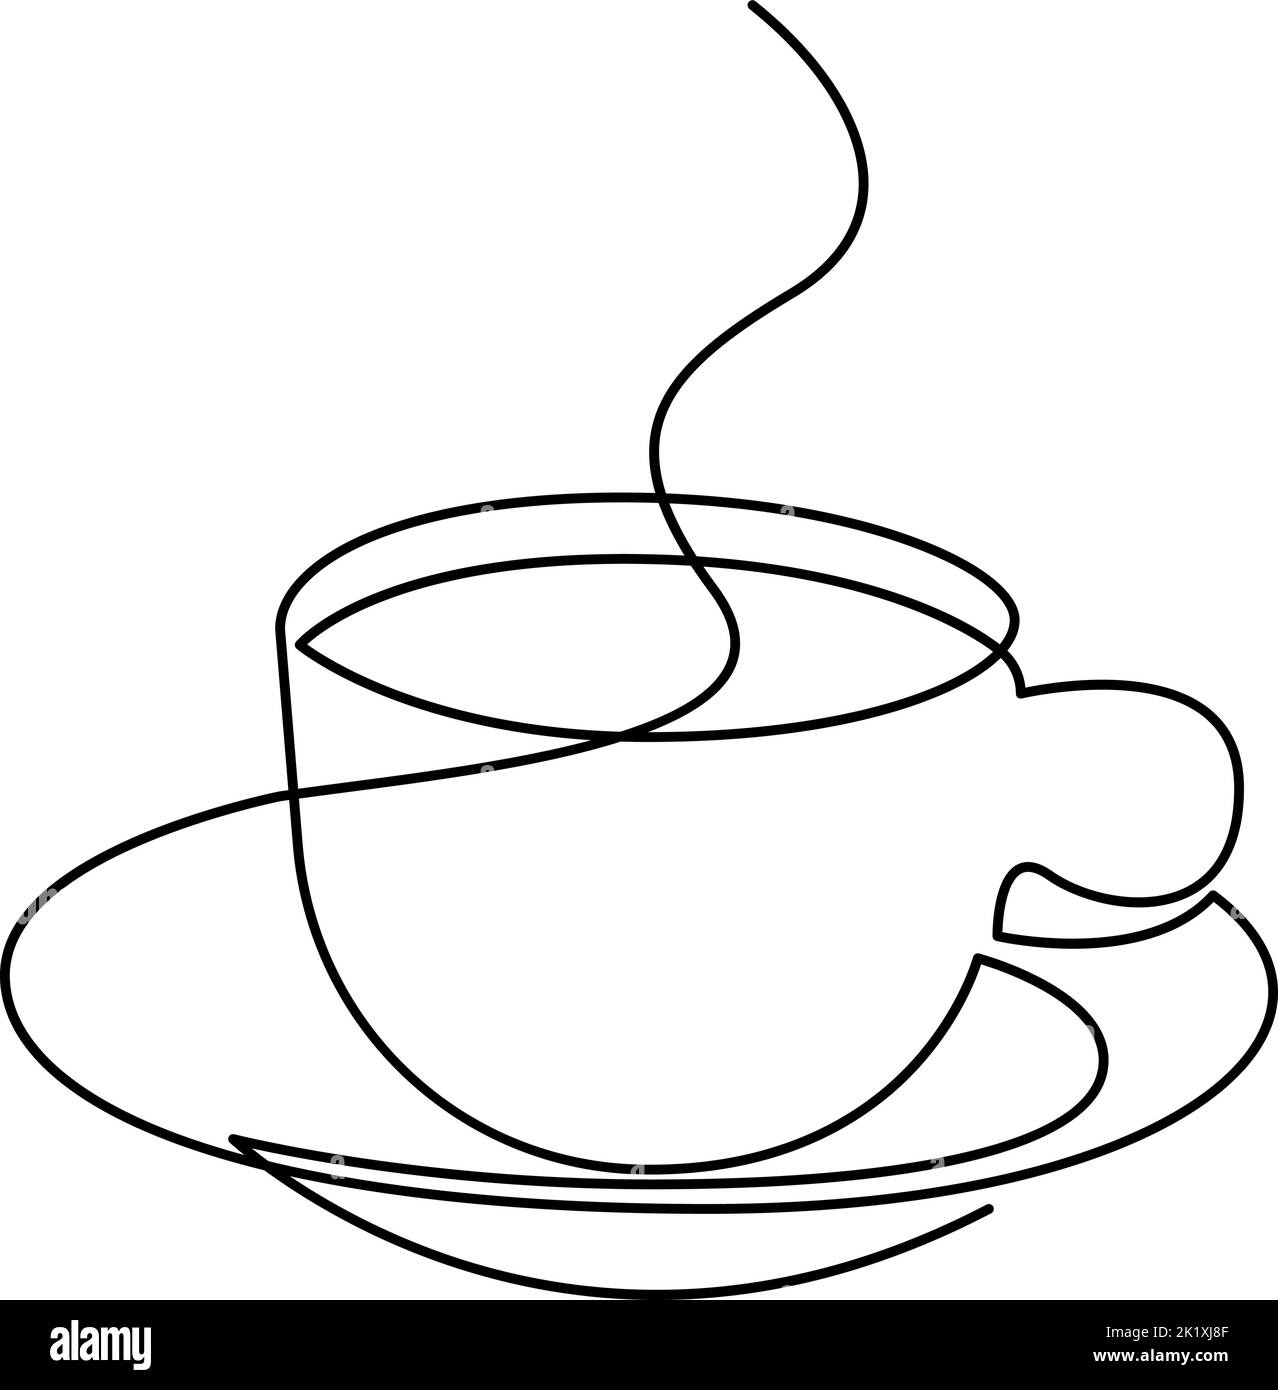 Disegno a linea continua di una tazza di caffè con vapore. Illustrazione vettoriale Illustrazione Vettoriale